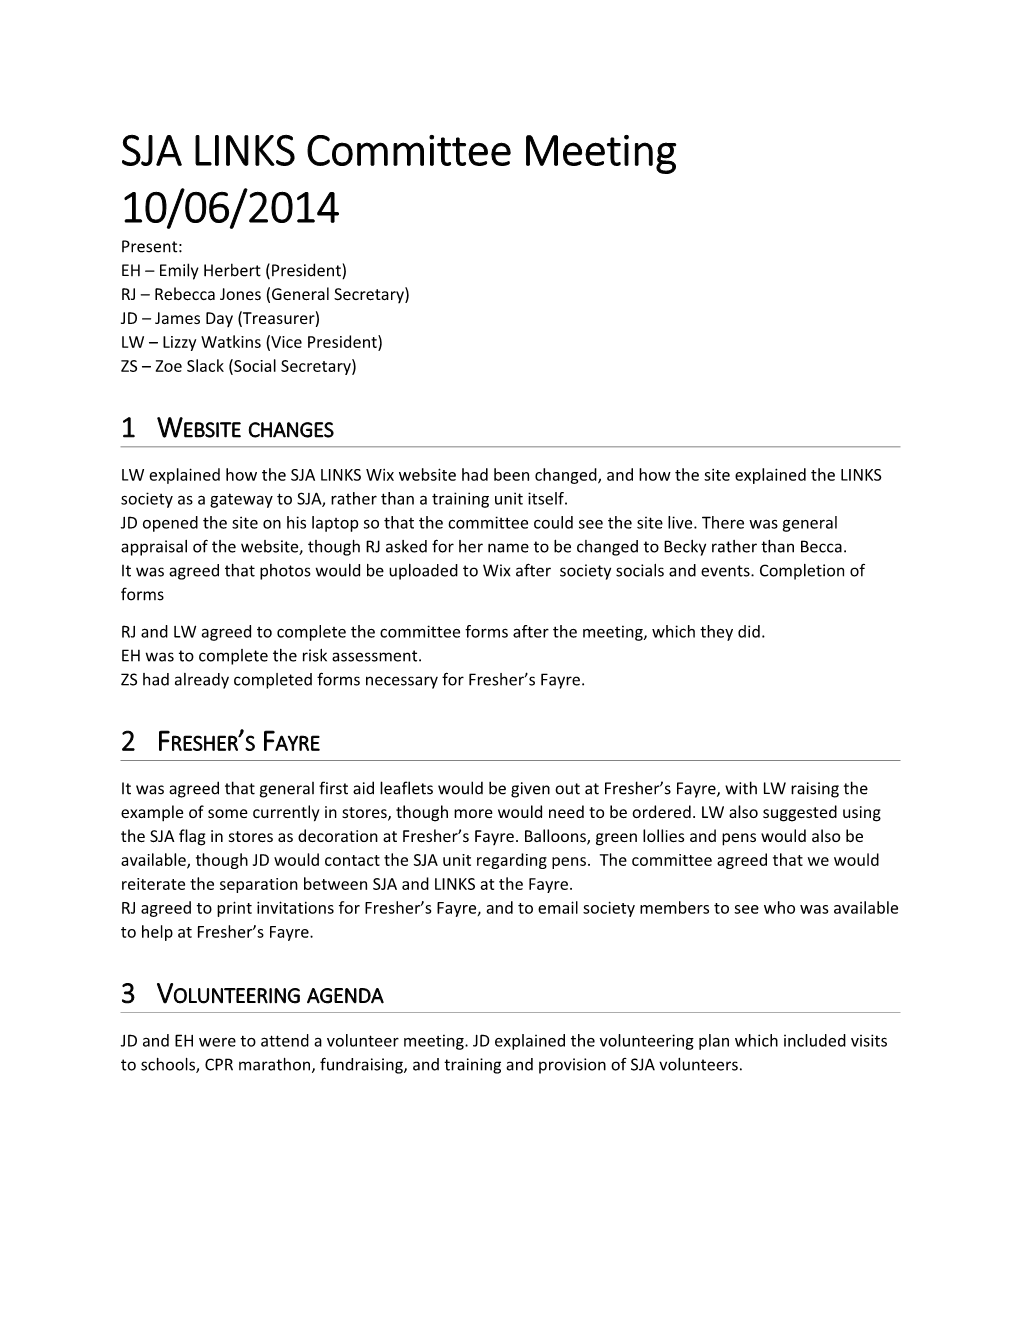 SJA LINKS Committee Meeting 10/06/2014